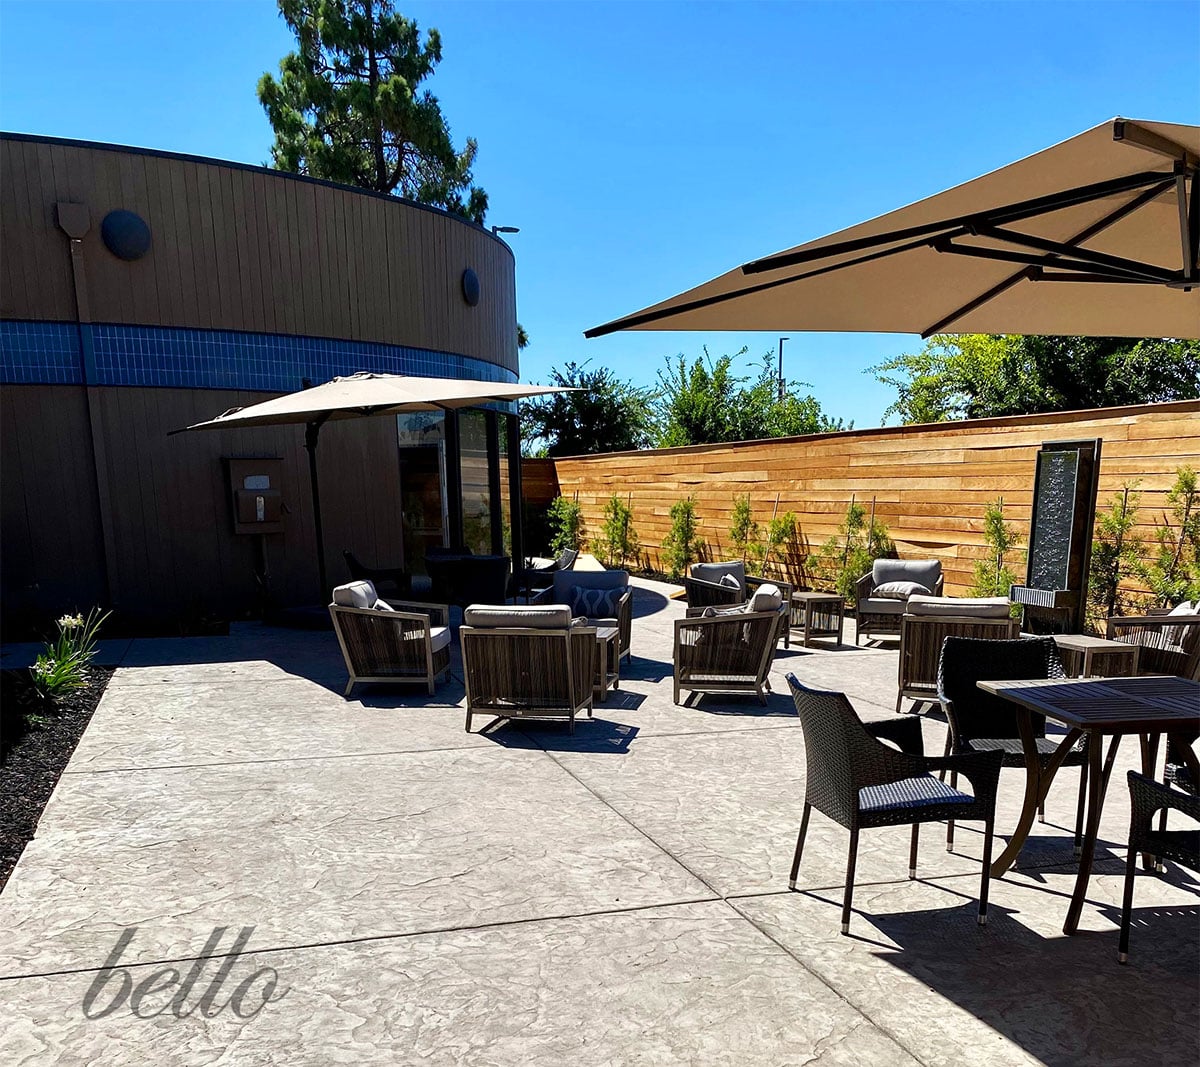 Outdoor Patio Lounge at Bello Salon Suites Sacramento.